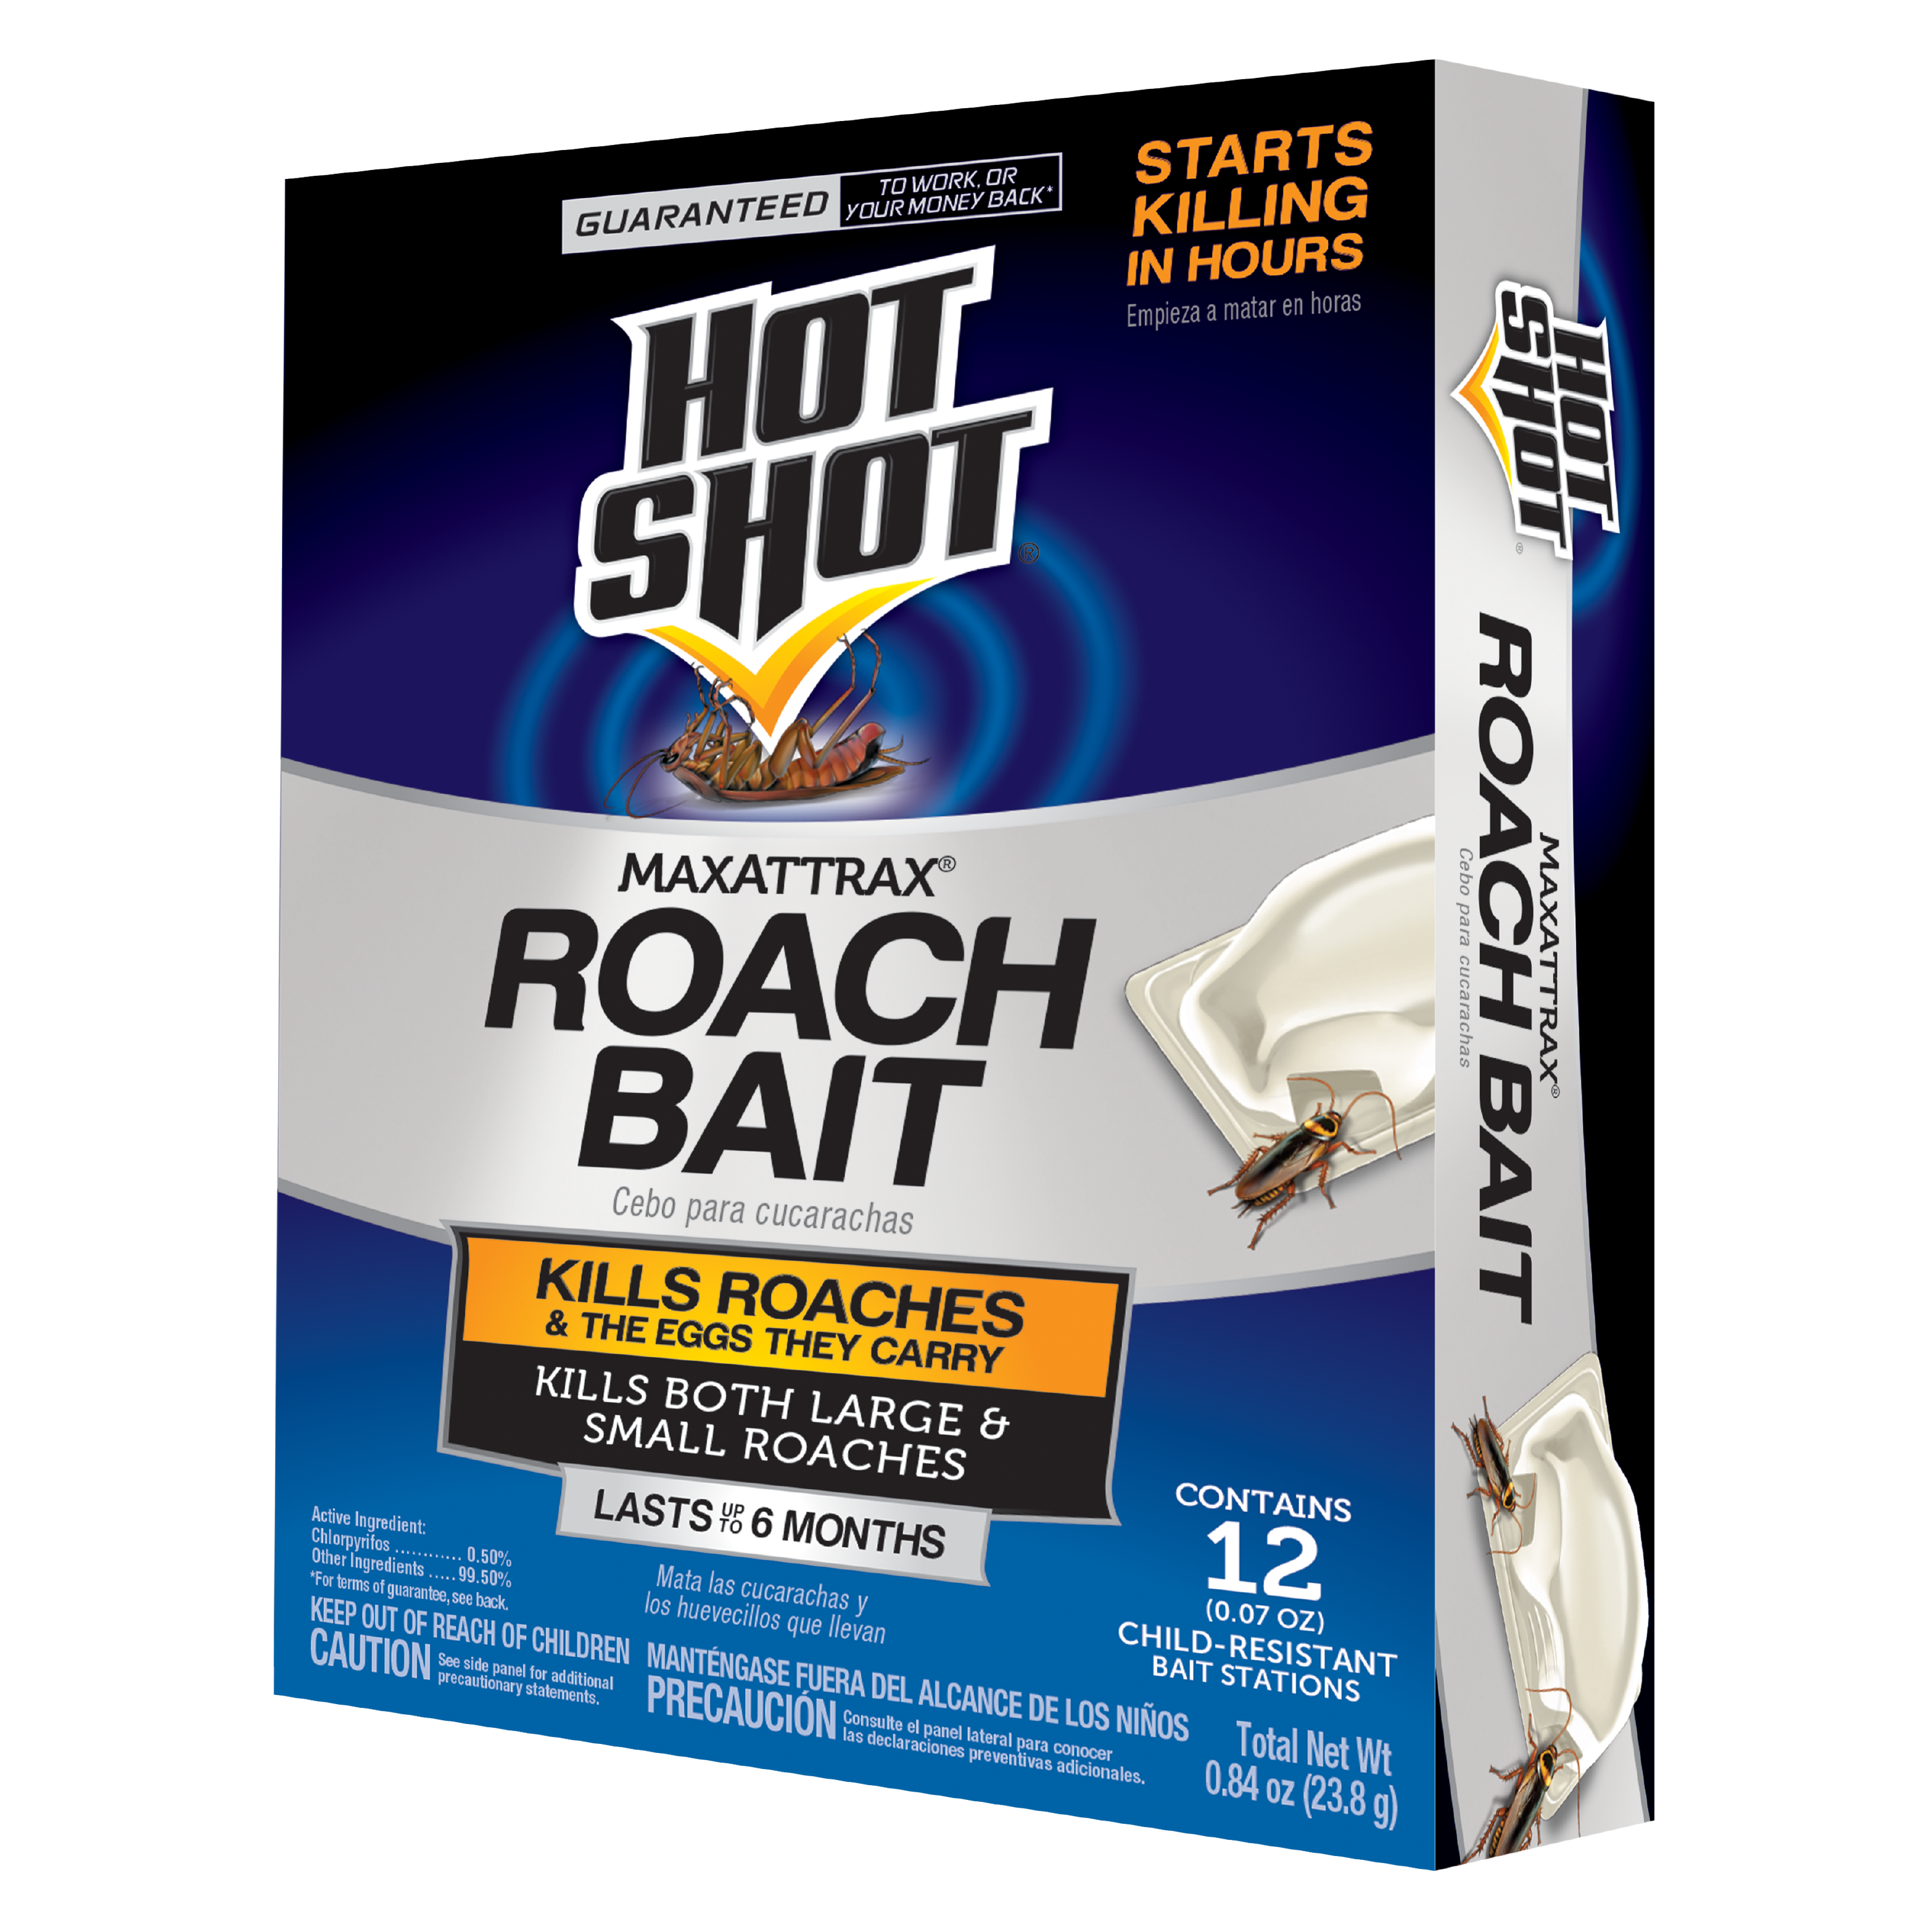 Hot Shot 0.84-oz MaxAttrax Roach Bait (12-Pack) at